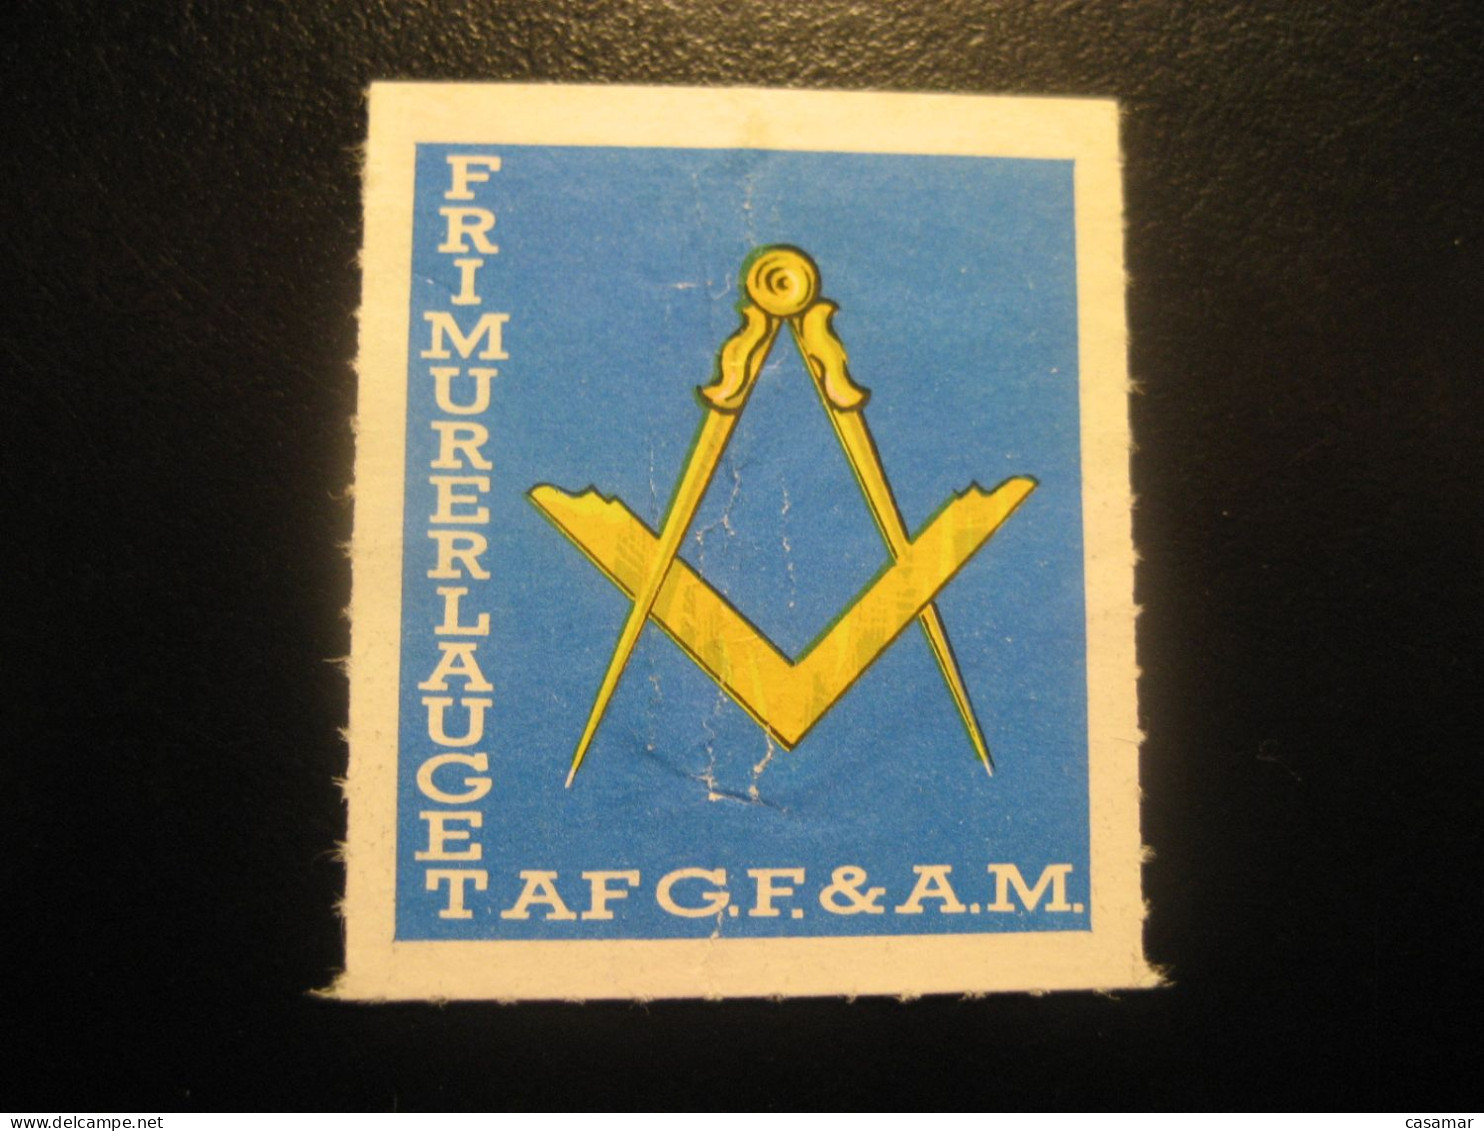 Frimurerlauget AF G.F. & A.M. Freemasonry Masonry Masonic Lodge Perces Zig Zag Poster Stamp Vignette DENMARK Label - Massoneria